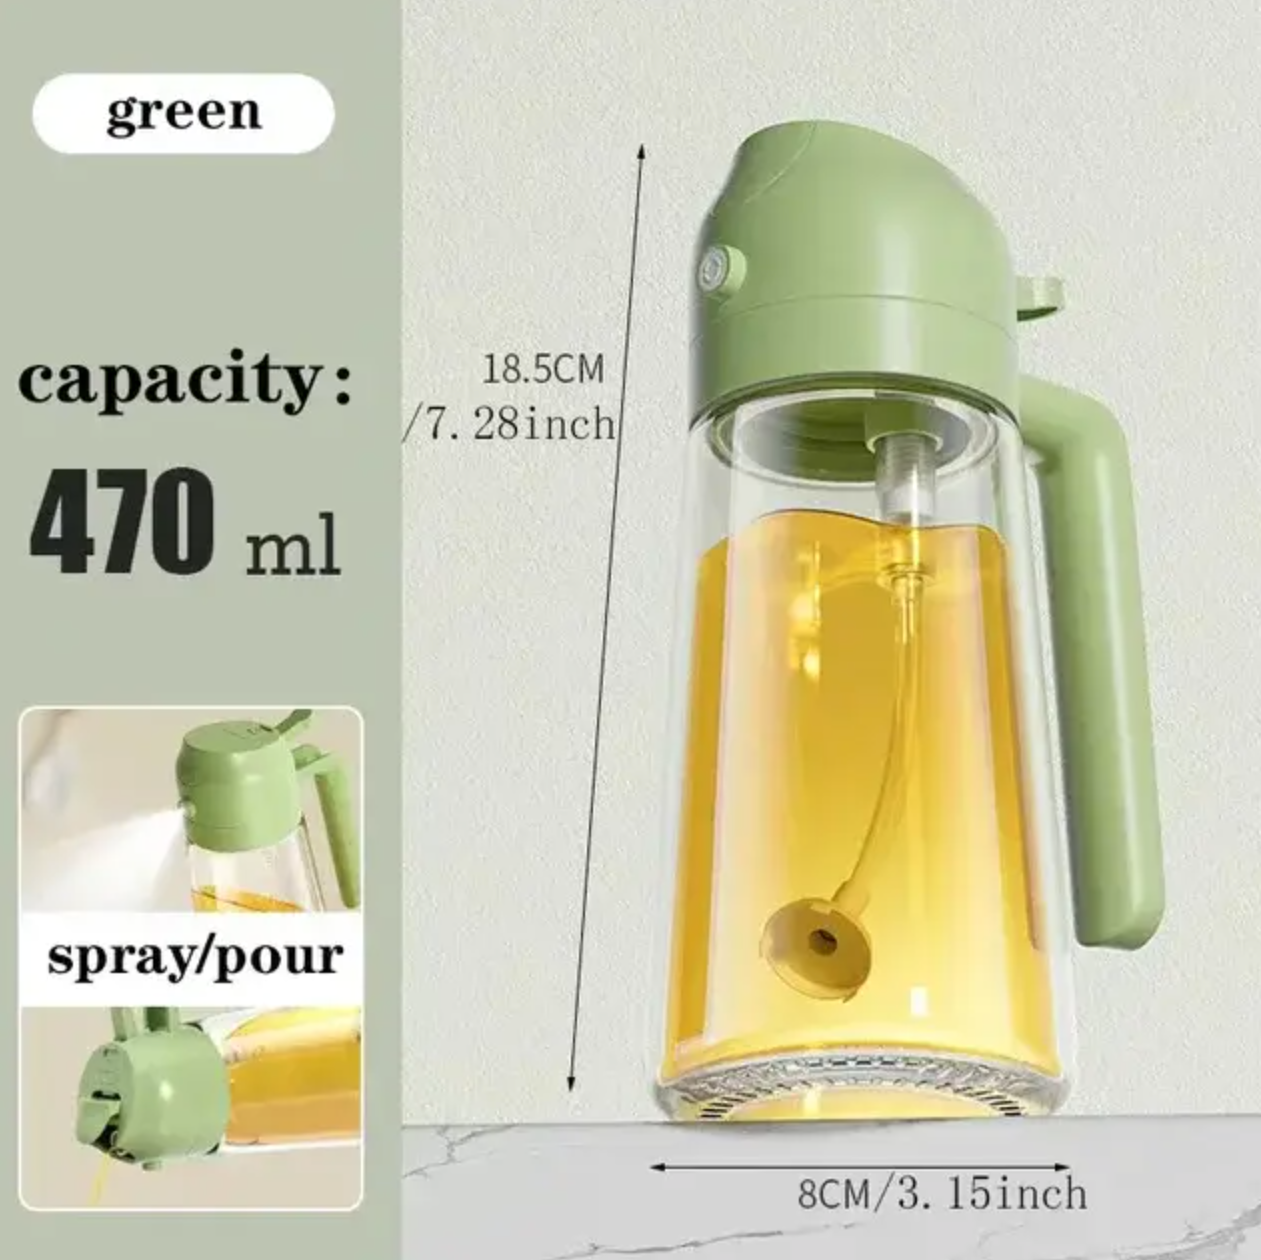 470ml Glass Spray Oil Sprayer Bottle: A Versatile 2-in-1 Oil Dispenser